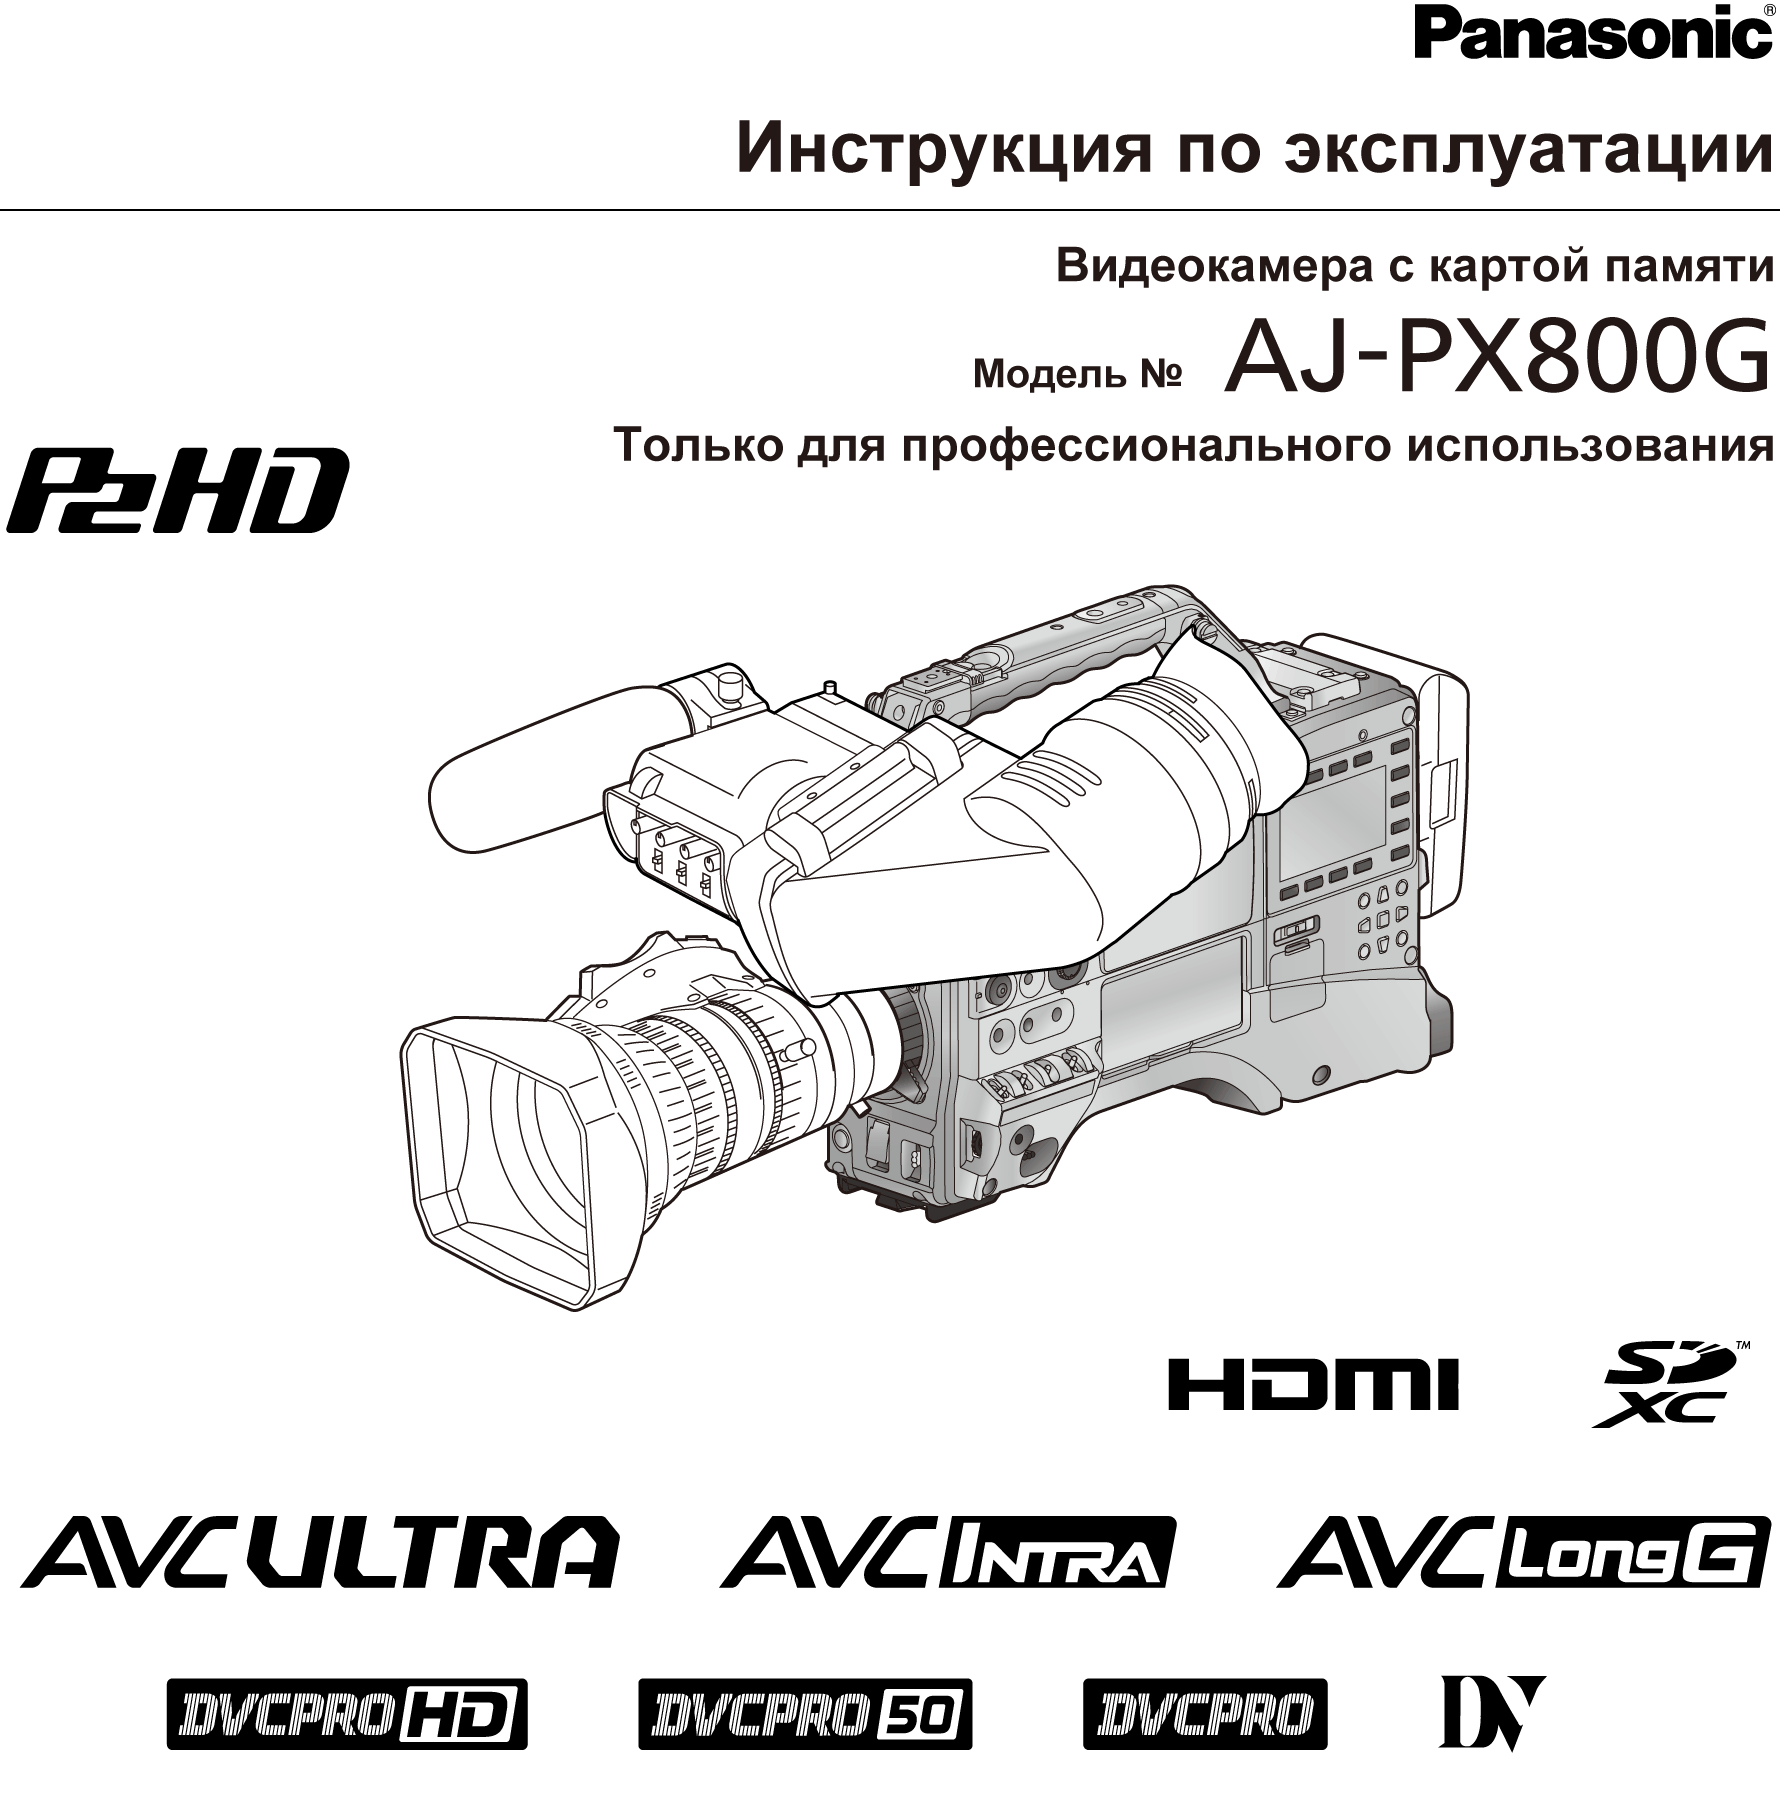 Инструкция по эксплуатации AJ-PX800G